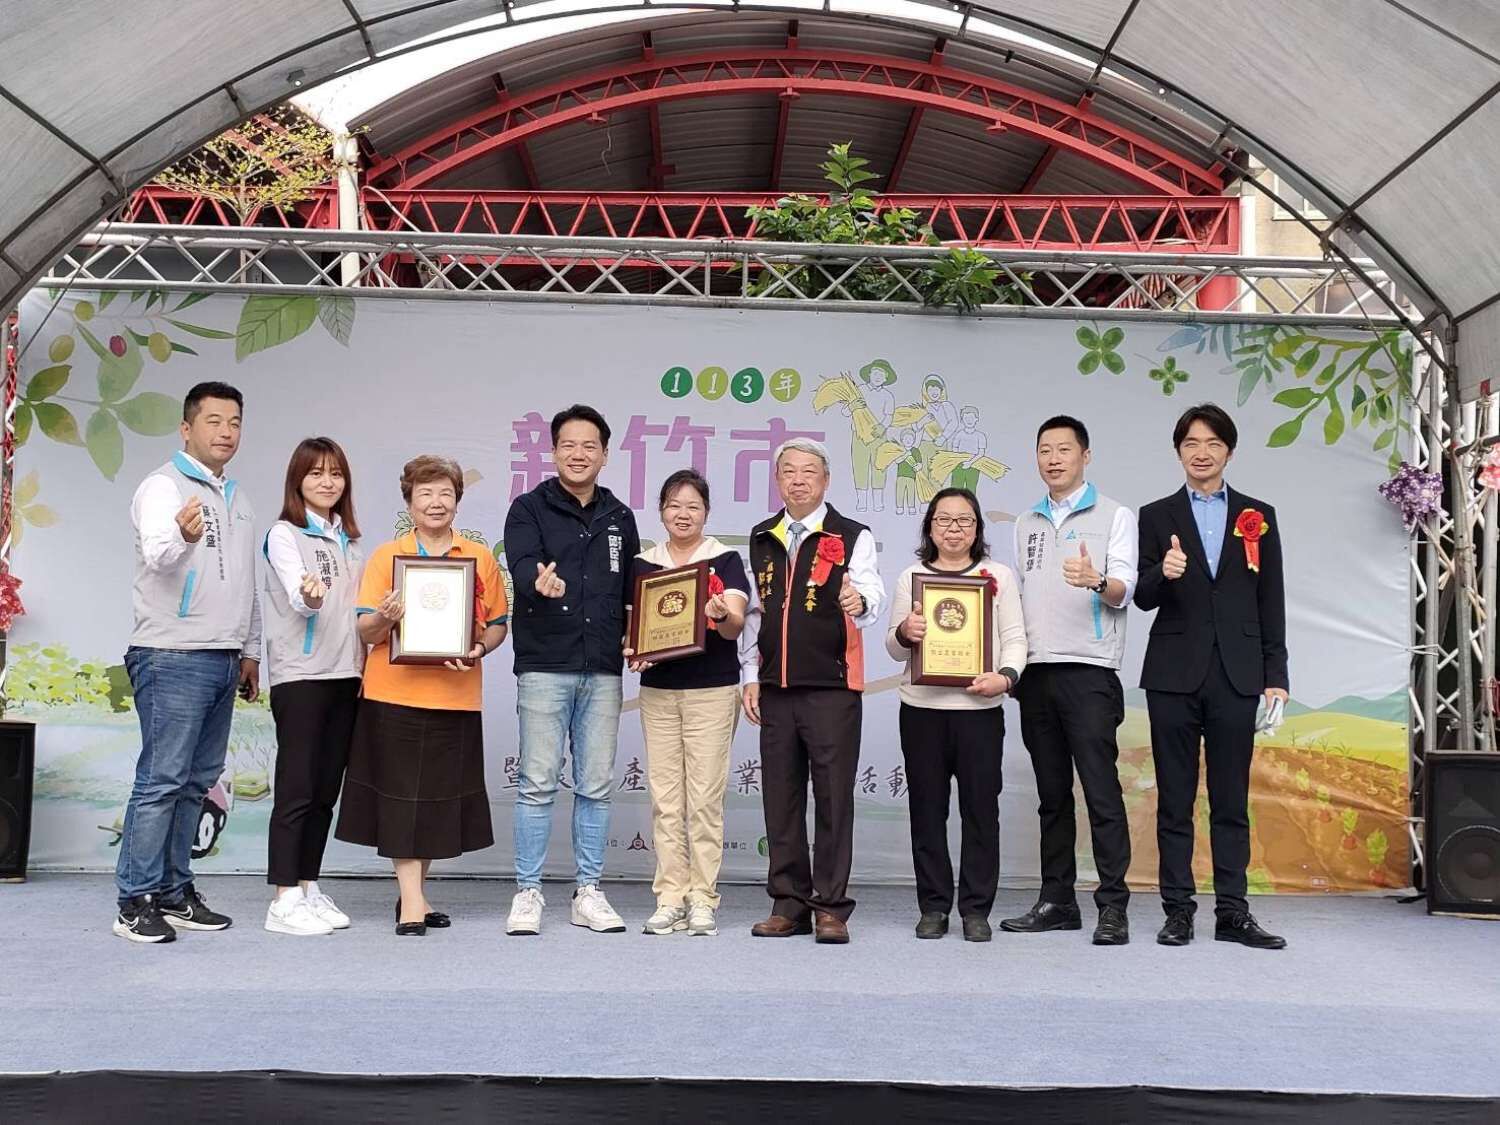 新竹市副市長邱臣遠及團隊與傑出農家婦女合影